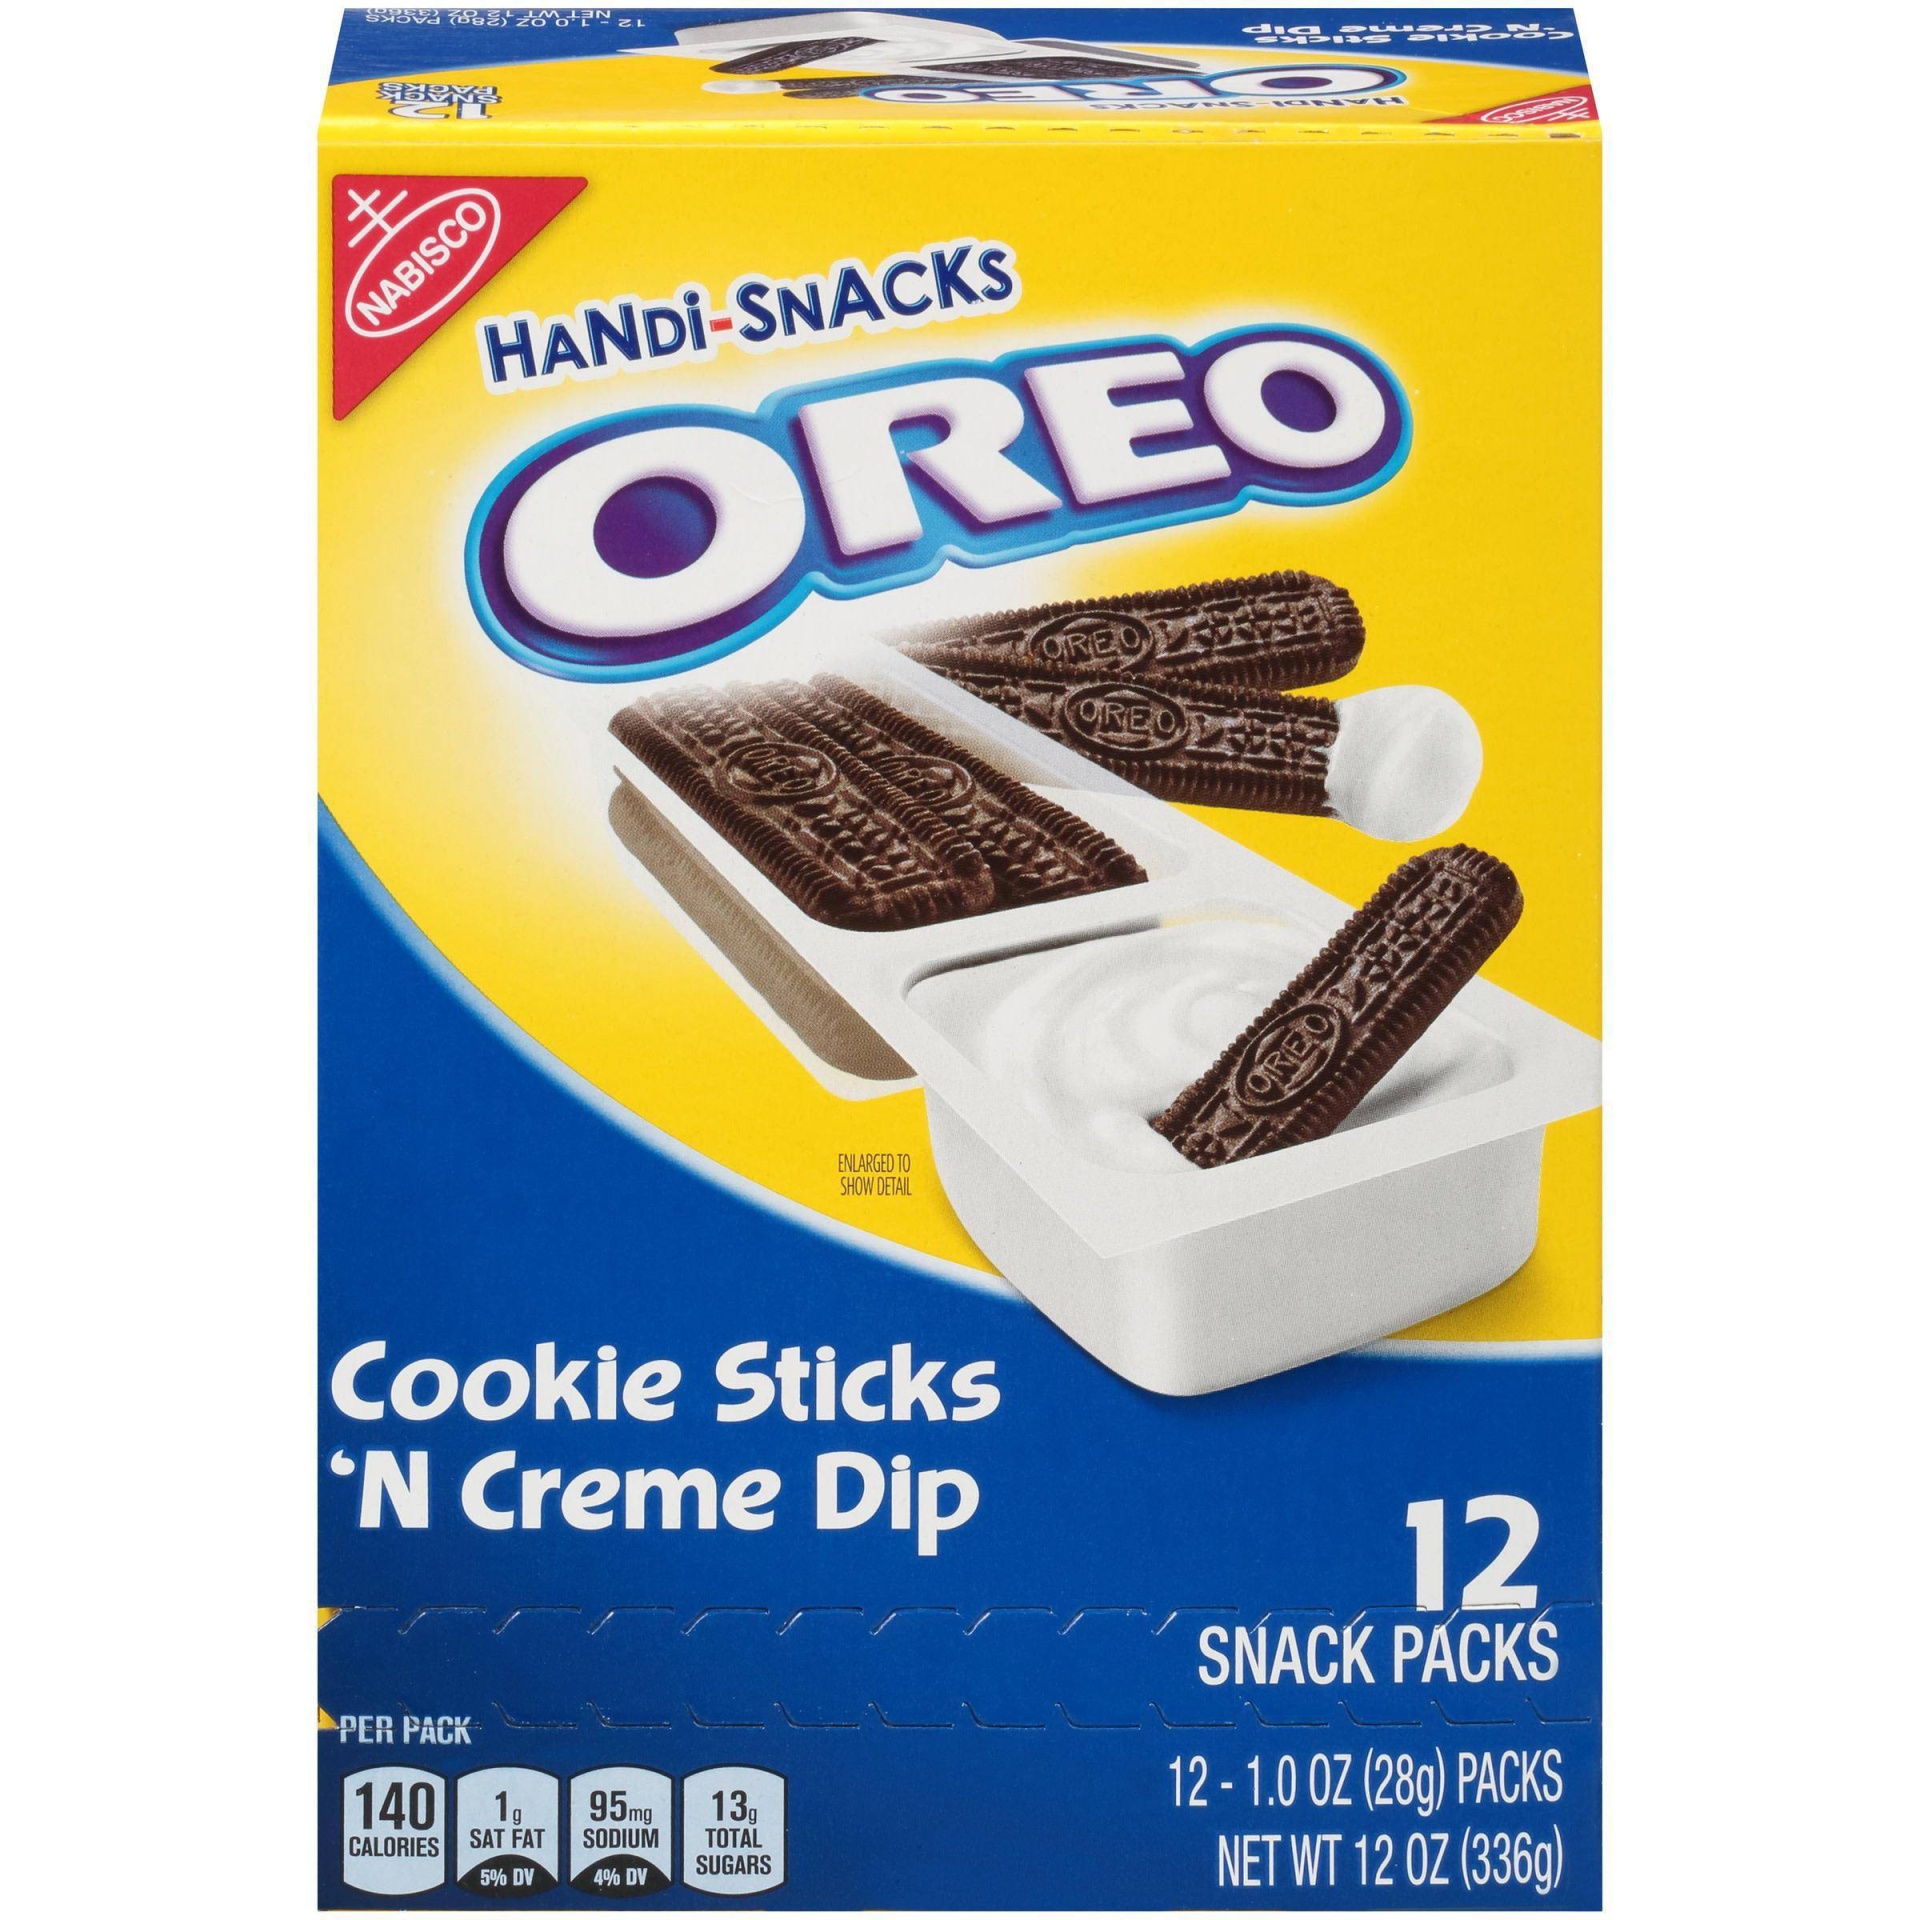 slide 1 of 8, Handi-Snacks OREO Cookie Sticks 'N Creme Dip Snack Packs, 12 Snack Packs, 12.1 oz